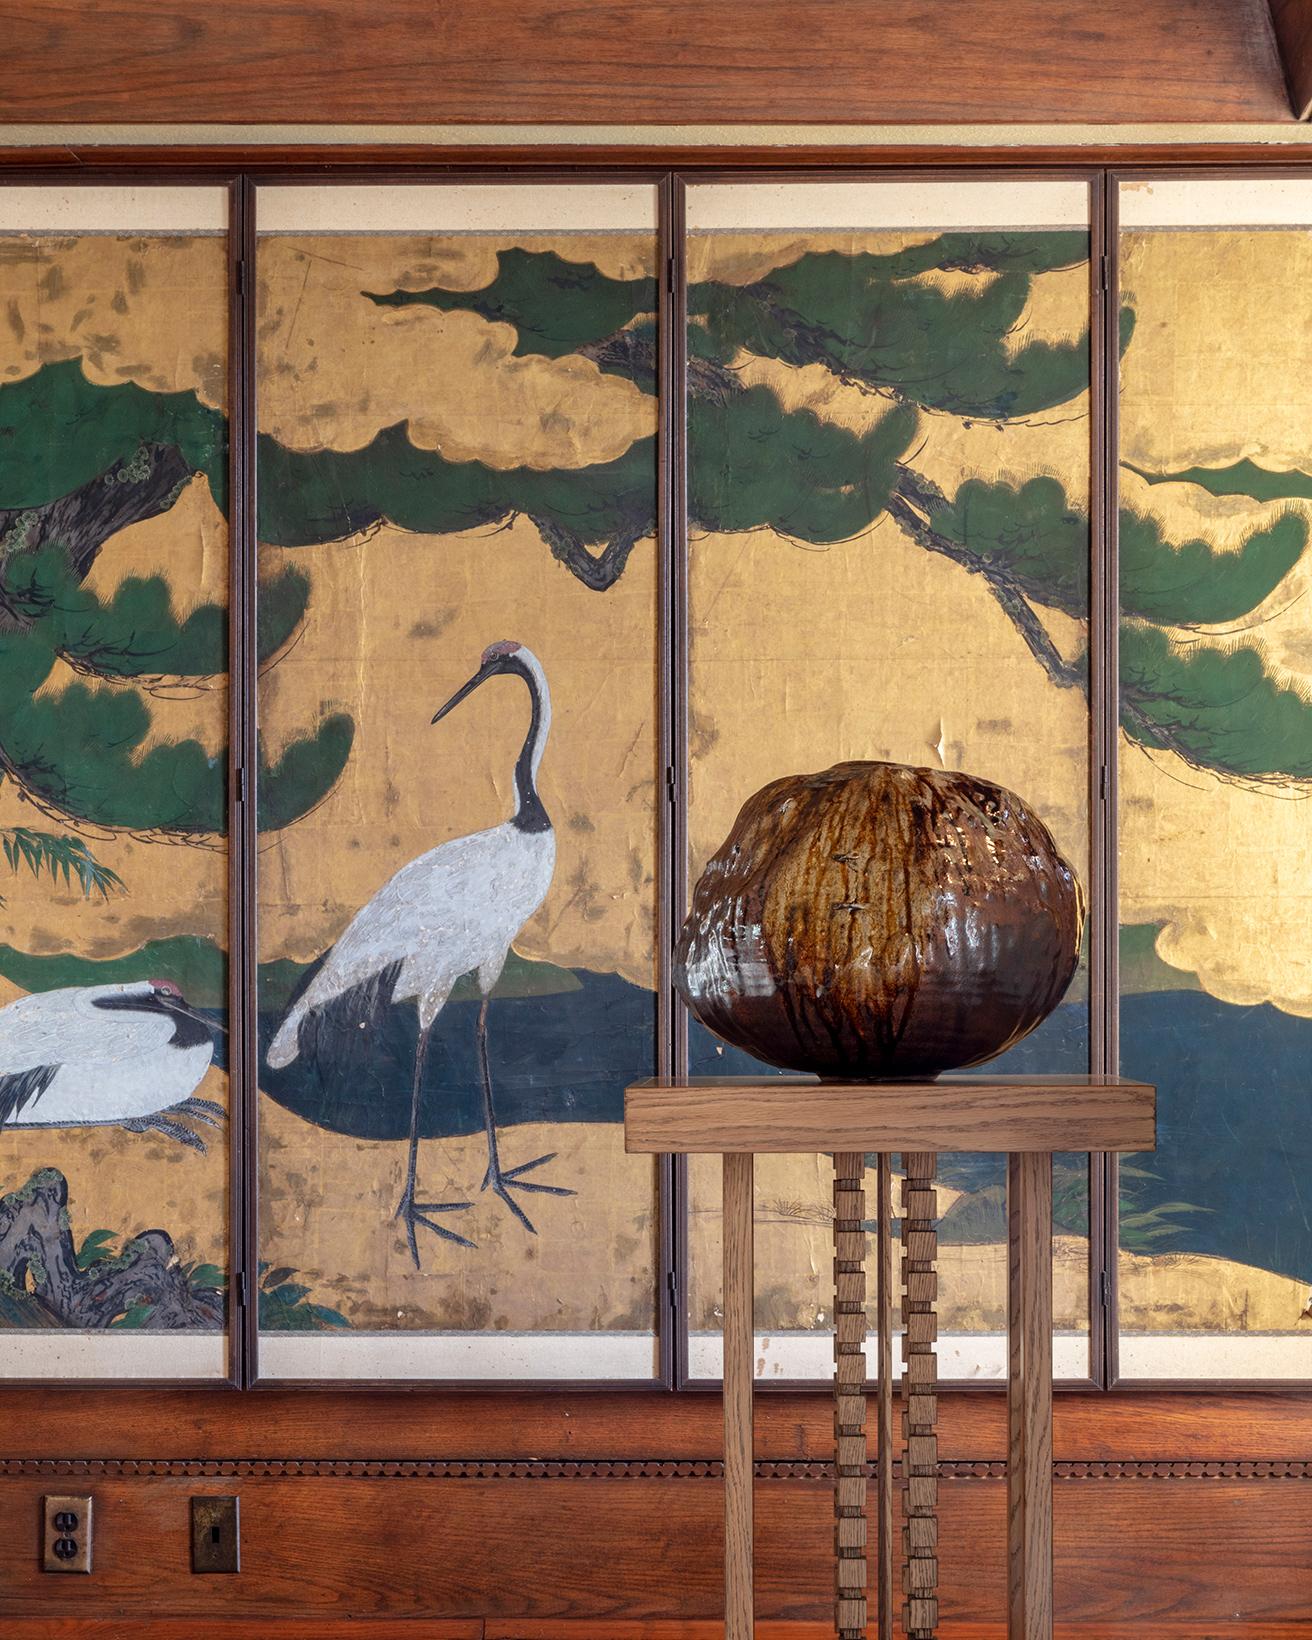 日本の骨董屏風に見合うアダムの作品の灰釉（木灰を用いた釉薬）には敷地から採集したオリーブの枝も含まれている。